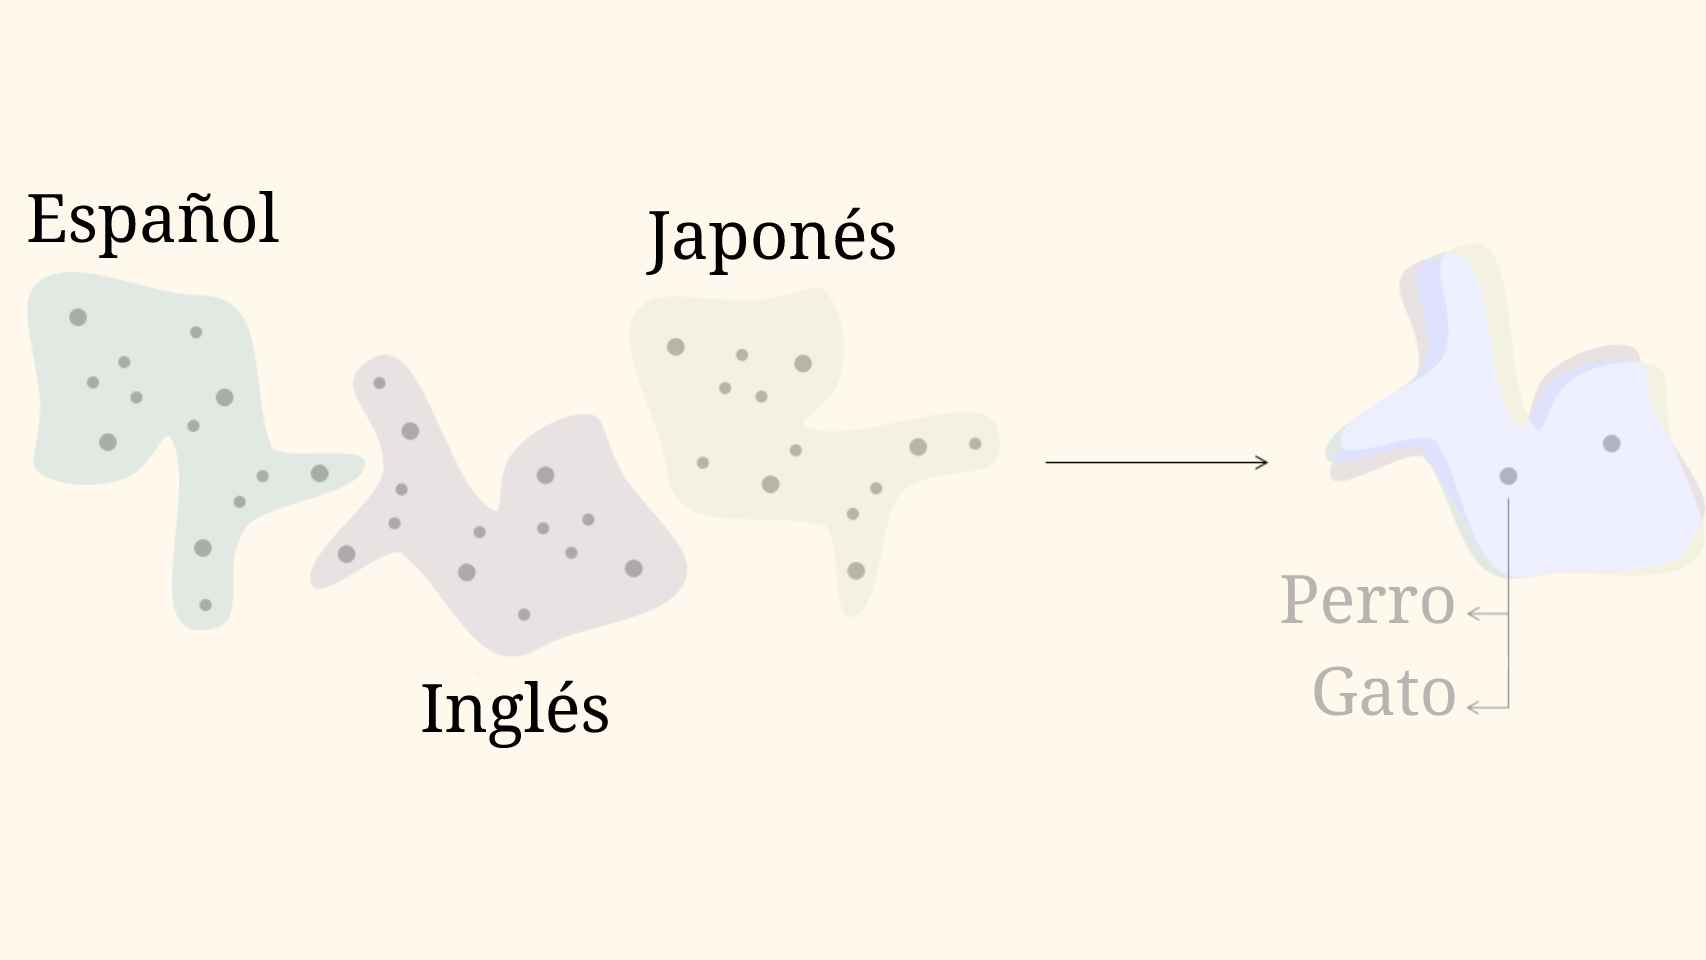 Las estructuras del español, el inglés y el japonés tienen formas similares.